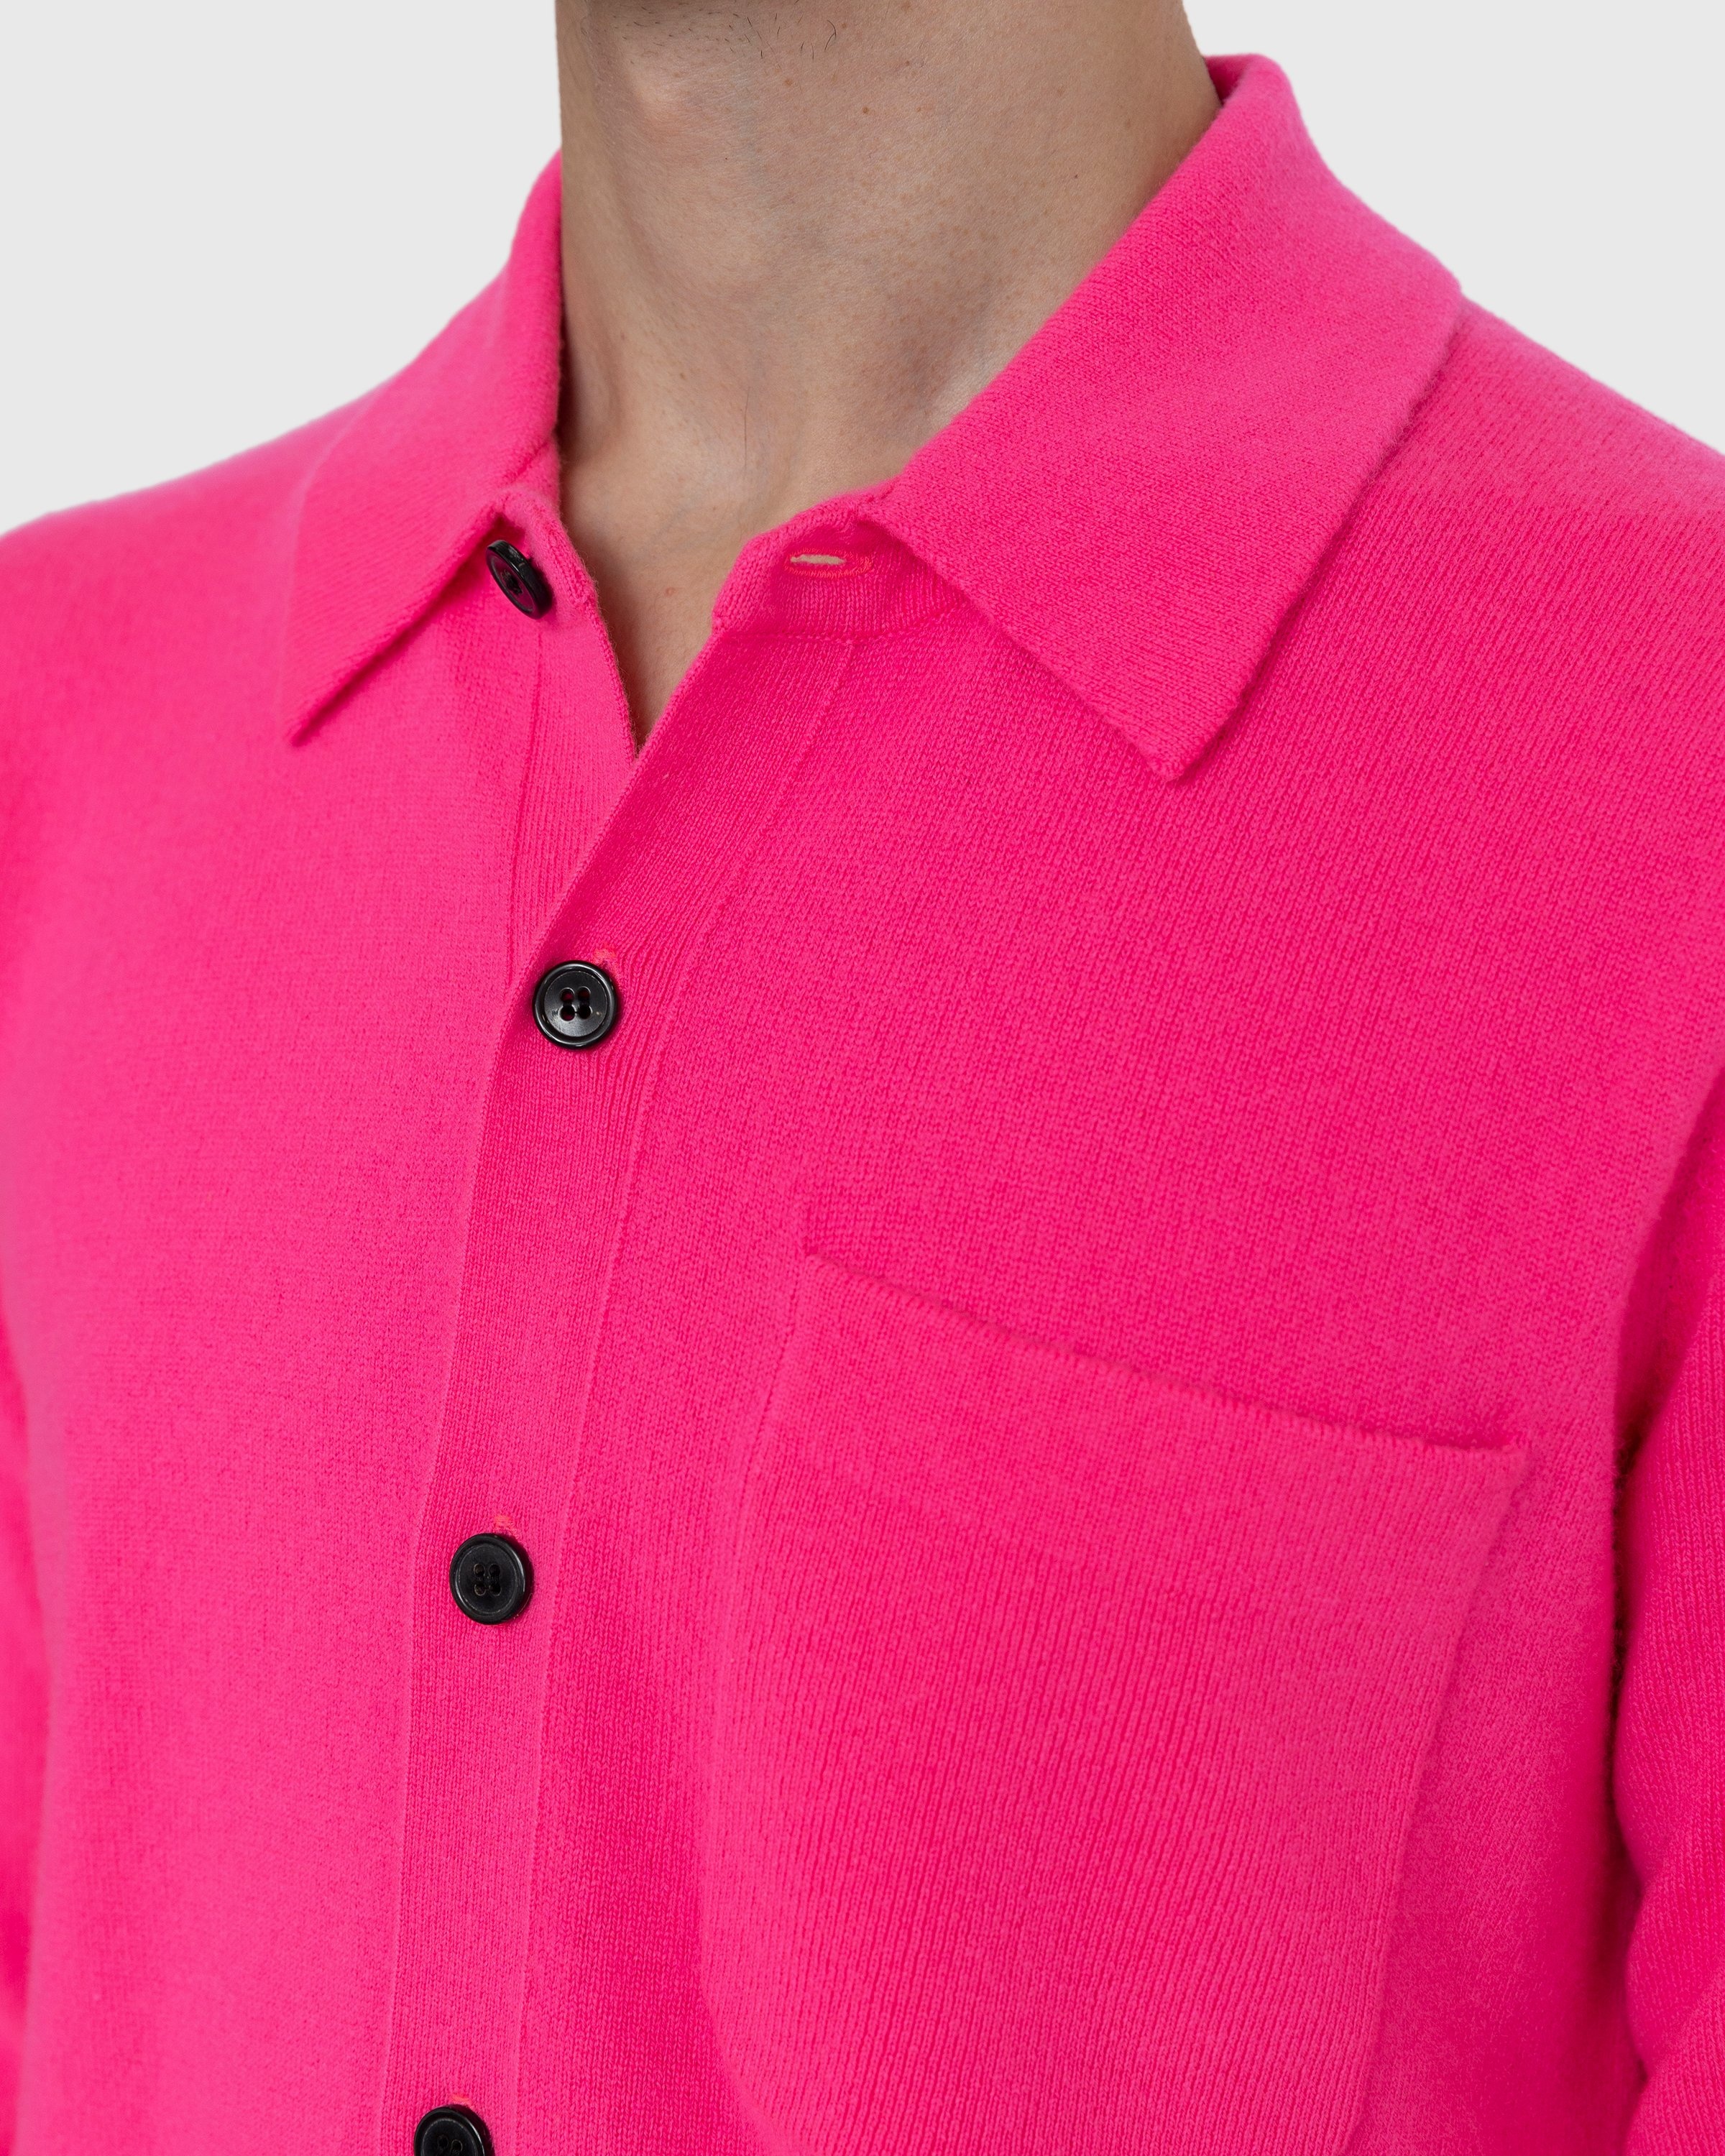 Dries van Noten – Never Cardigan - Knitwear - Pink - Image 6